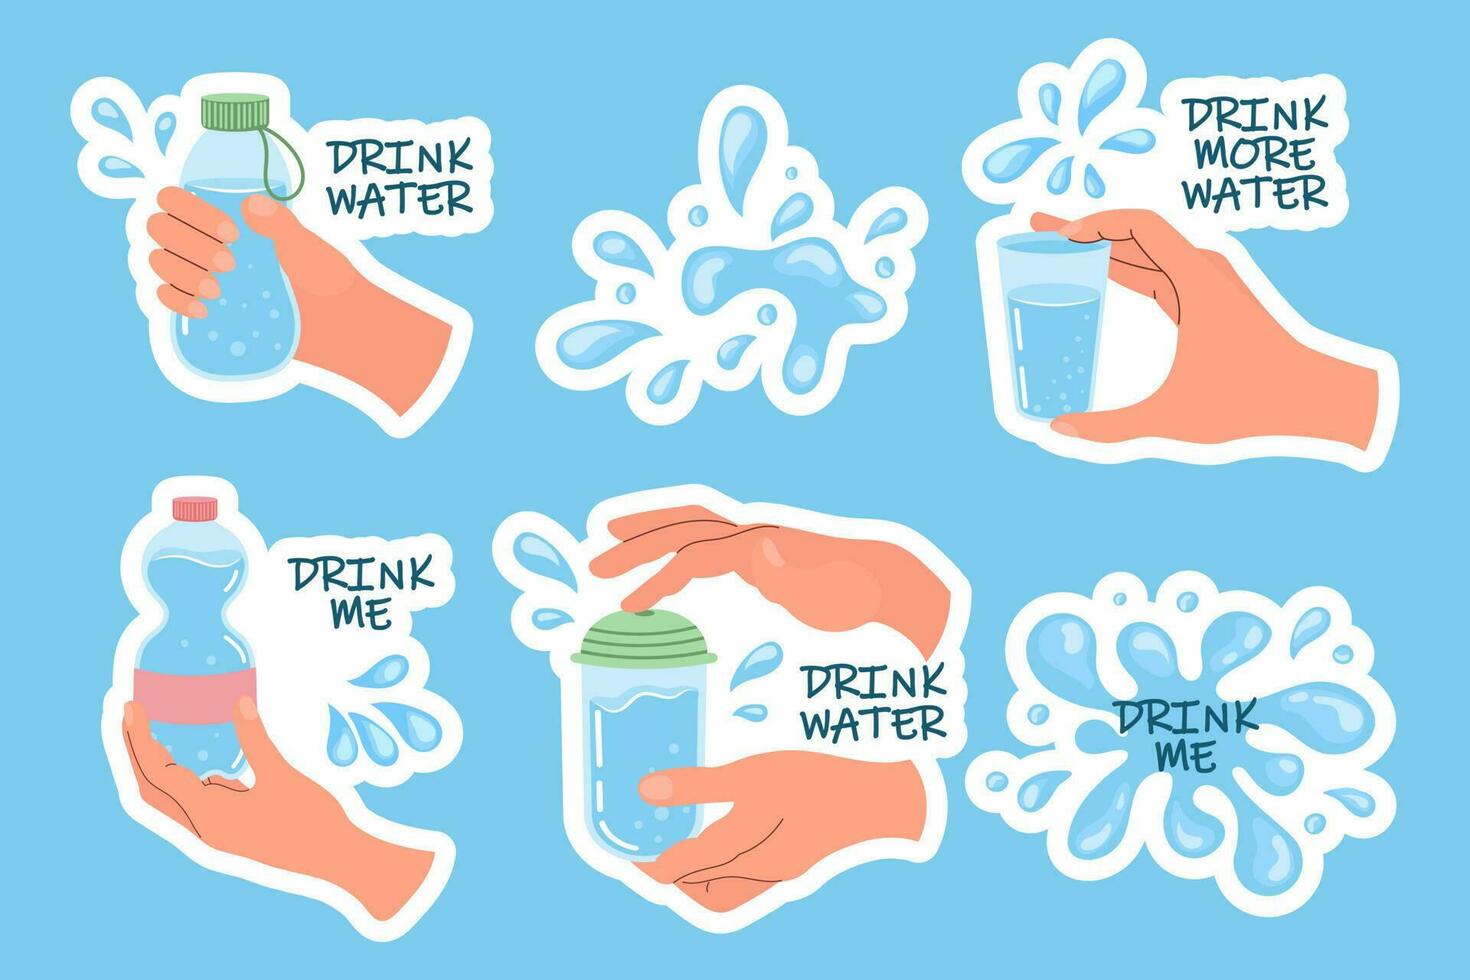 conjunto do mãos segurando diferente containers do água. óculos e garrafas do água dentro mãos. beber Mais água conceito. grampo arte, adesivos, vetor